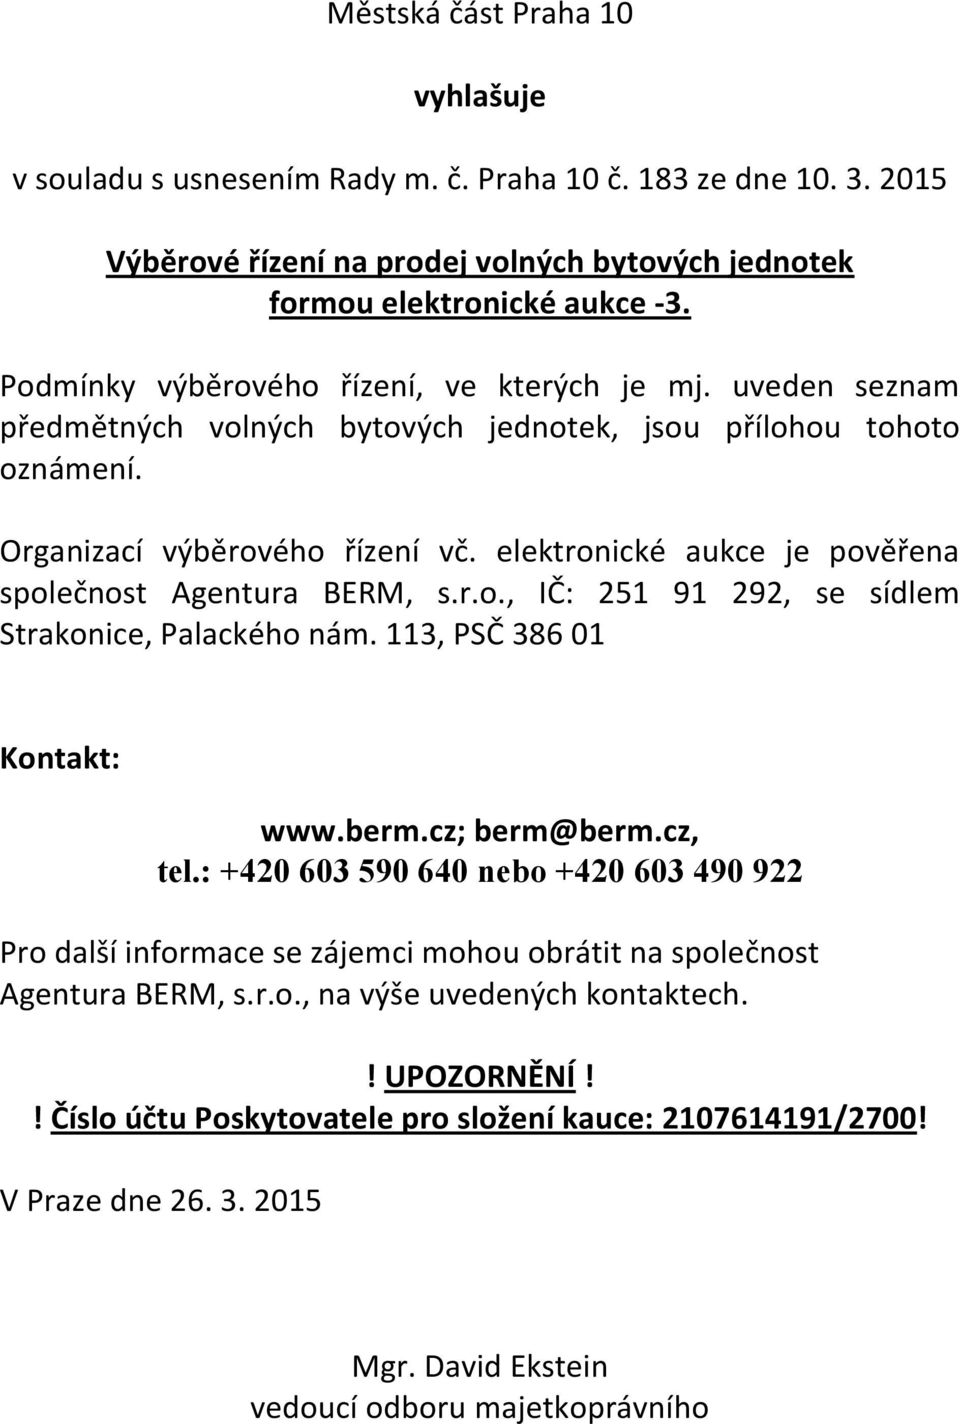 elektronické aukce je pověřena společnost Agentura BERM, s.r.o., IČ: 251 91 292, se sídlem Strakonice, Palackého nám. 113, PSČ 386 01 Kontakt: www.berm.cz; berm@berm.cz, tel.